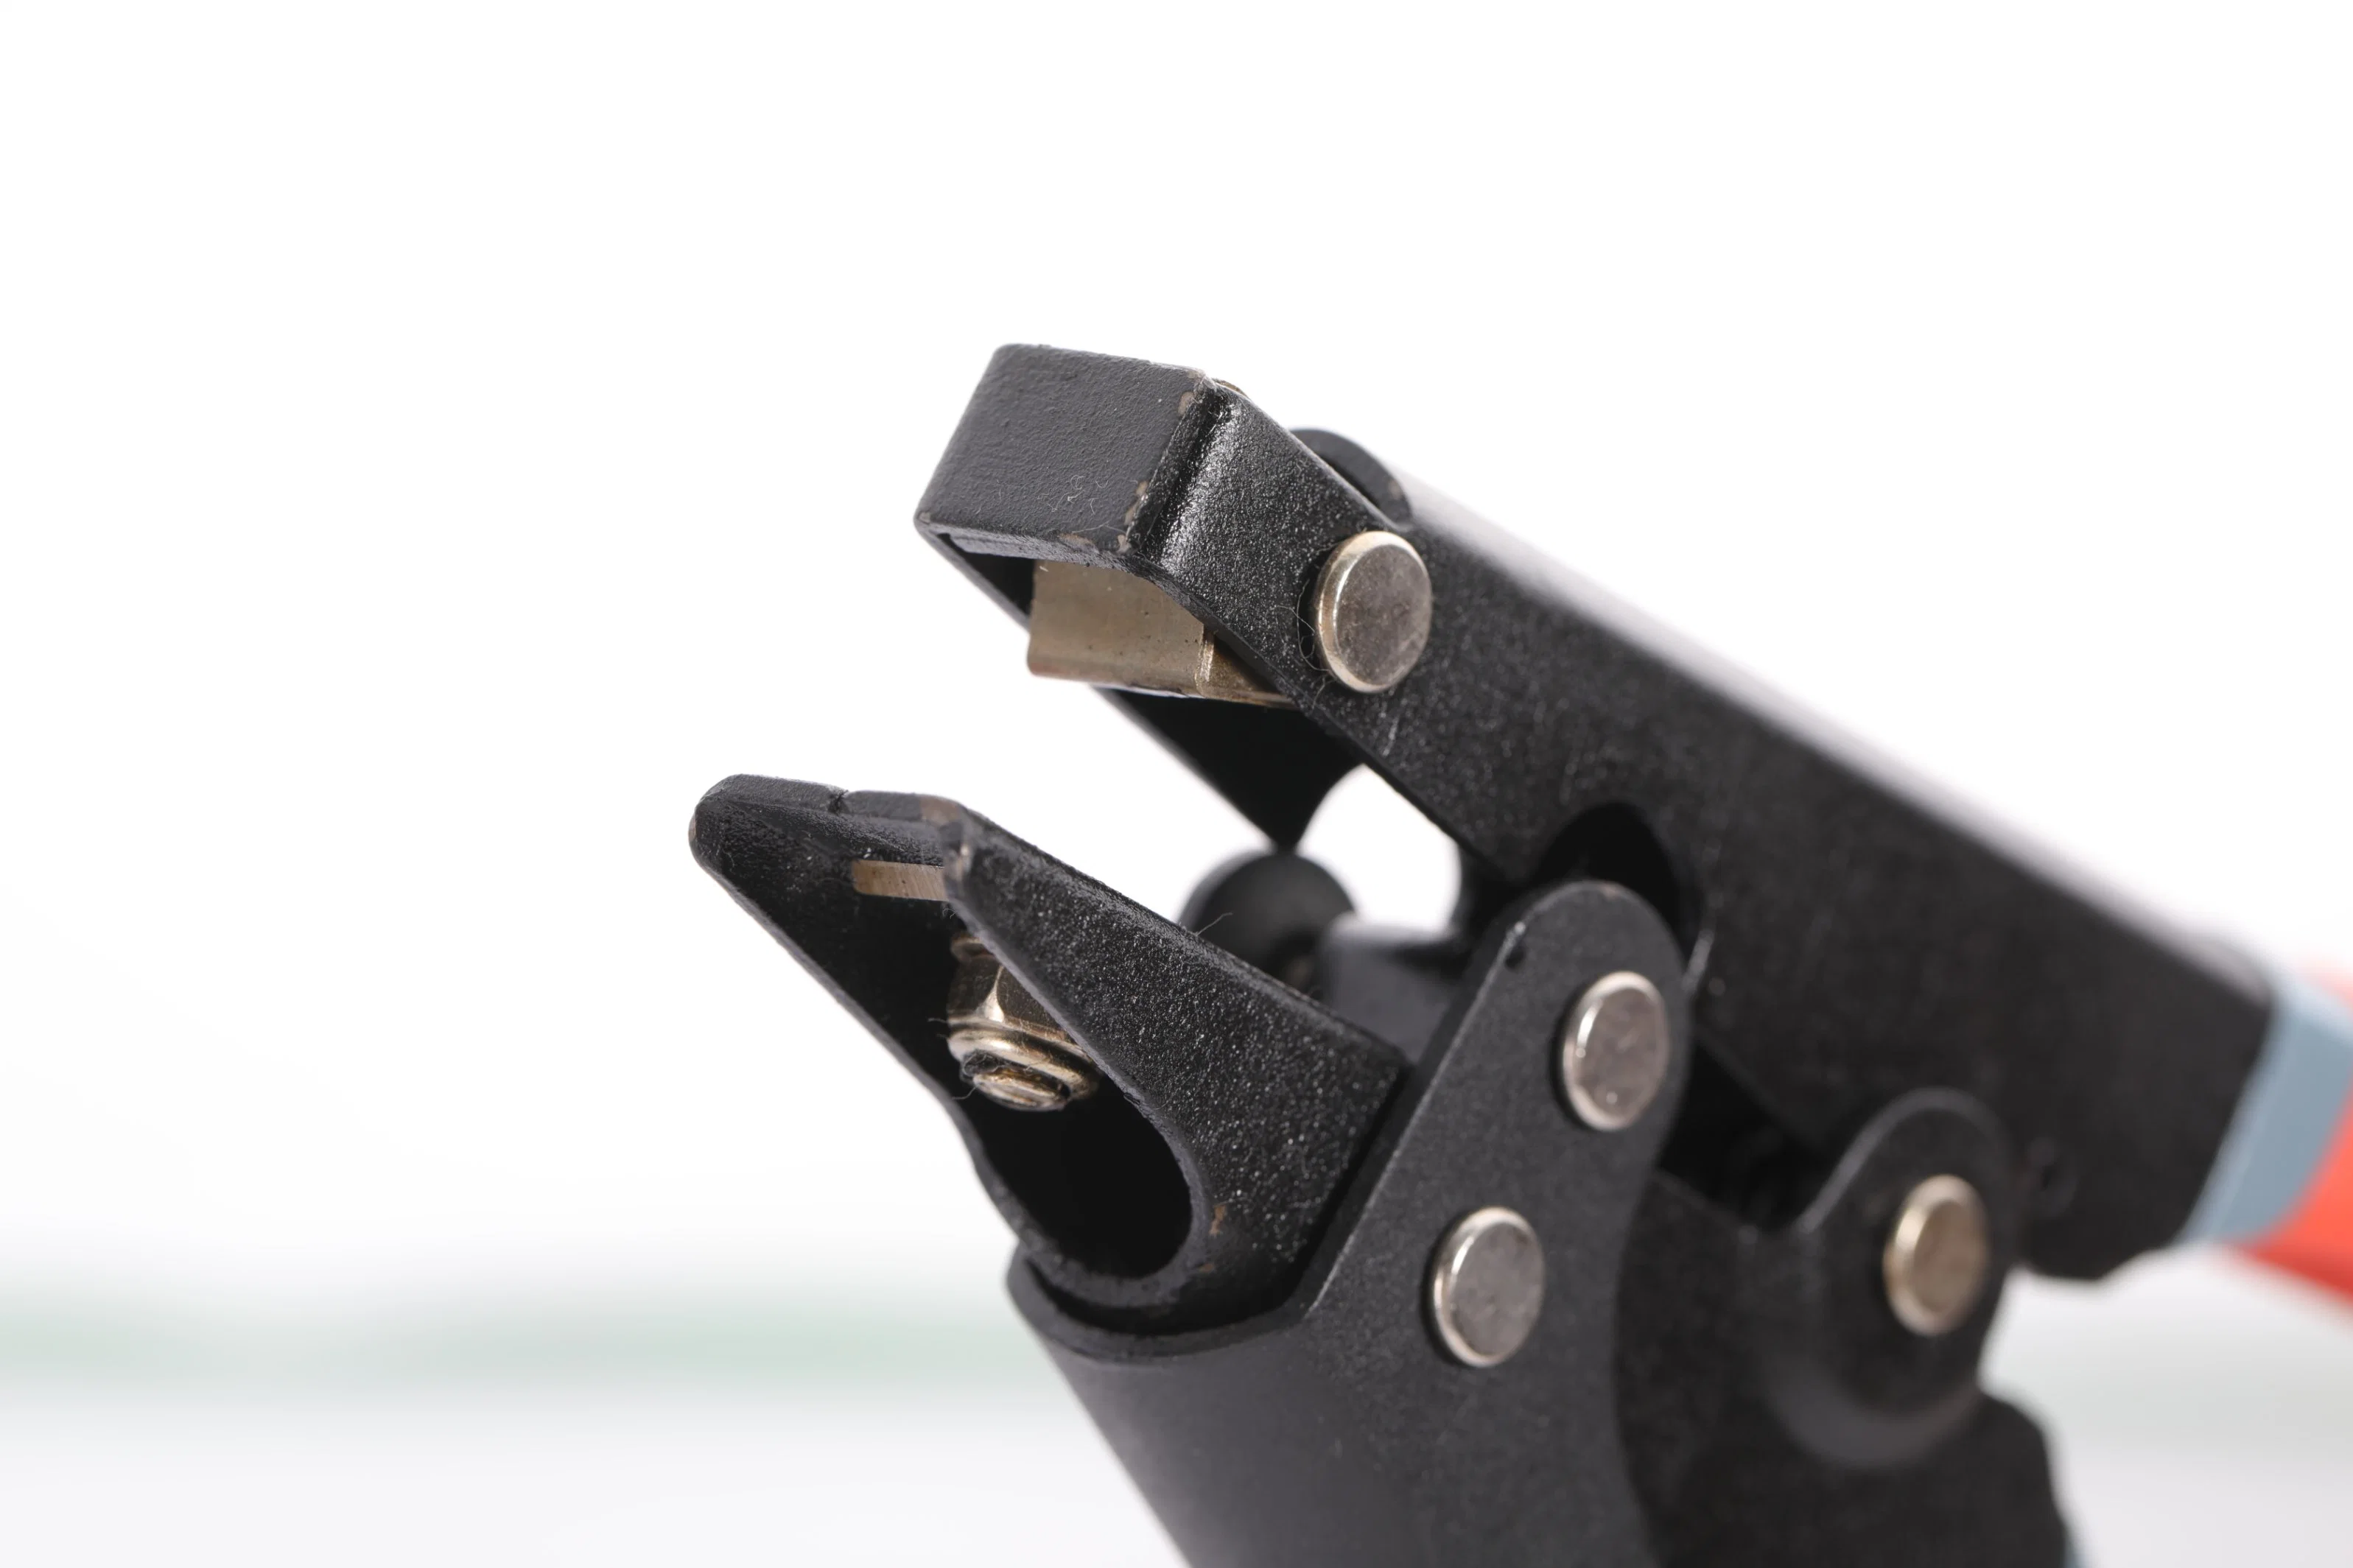 OEM akzeptables Spann- und Schneidwerkzeug für Kunststoff-Nylon-Kabel Binde- oder Verbindungselemente Reißverschlussbinde-Werkzeug